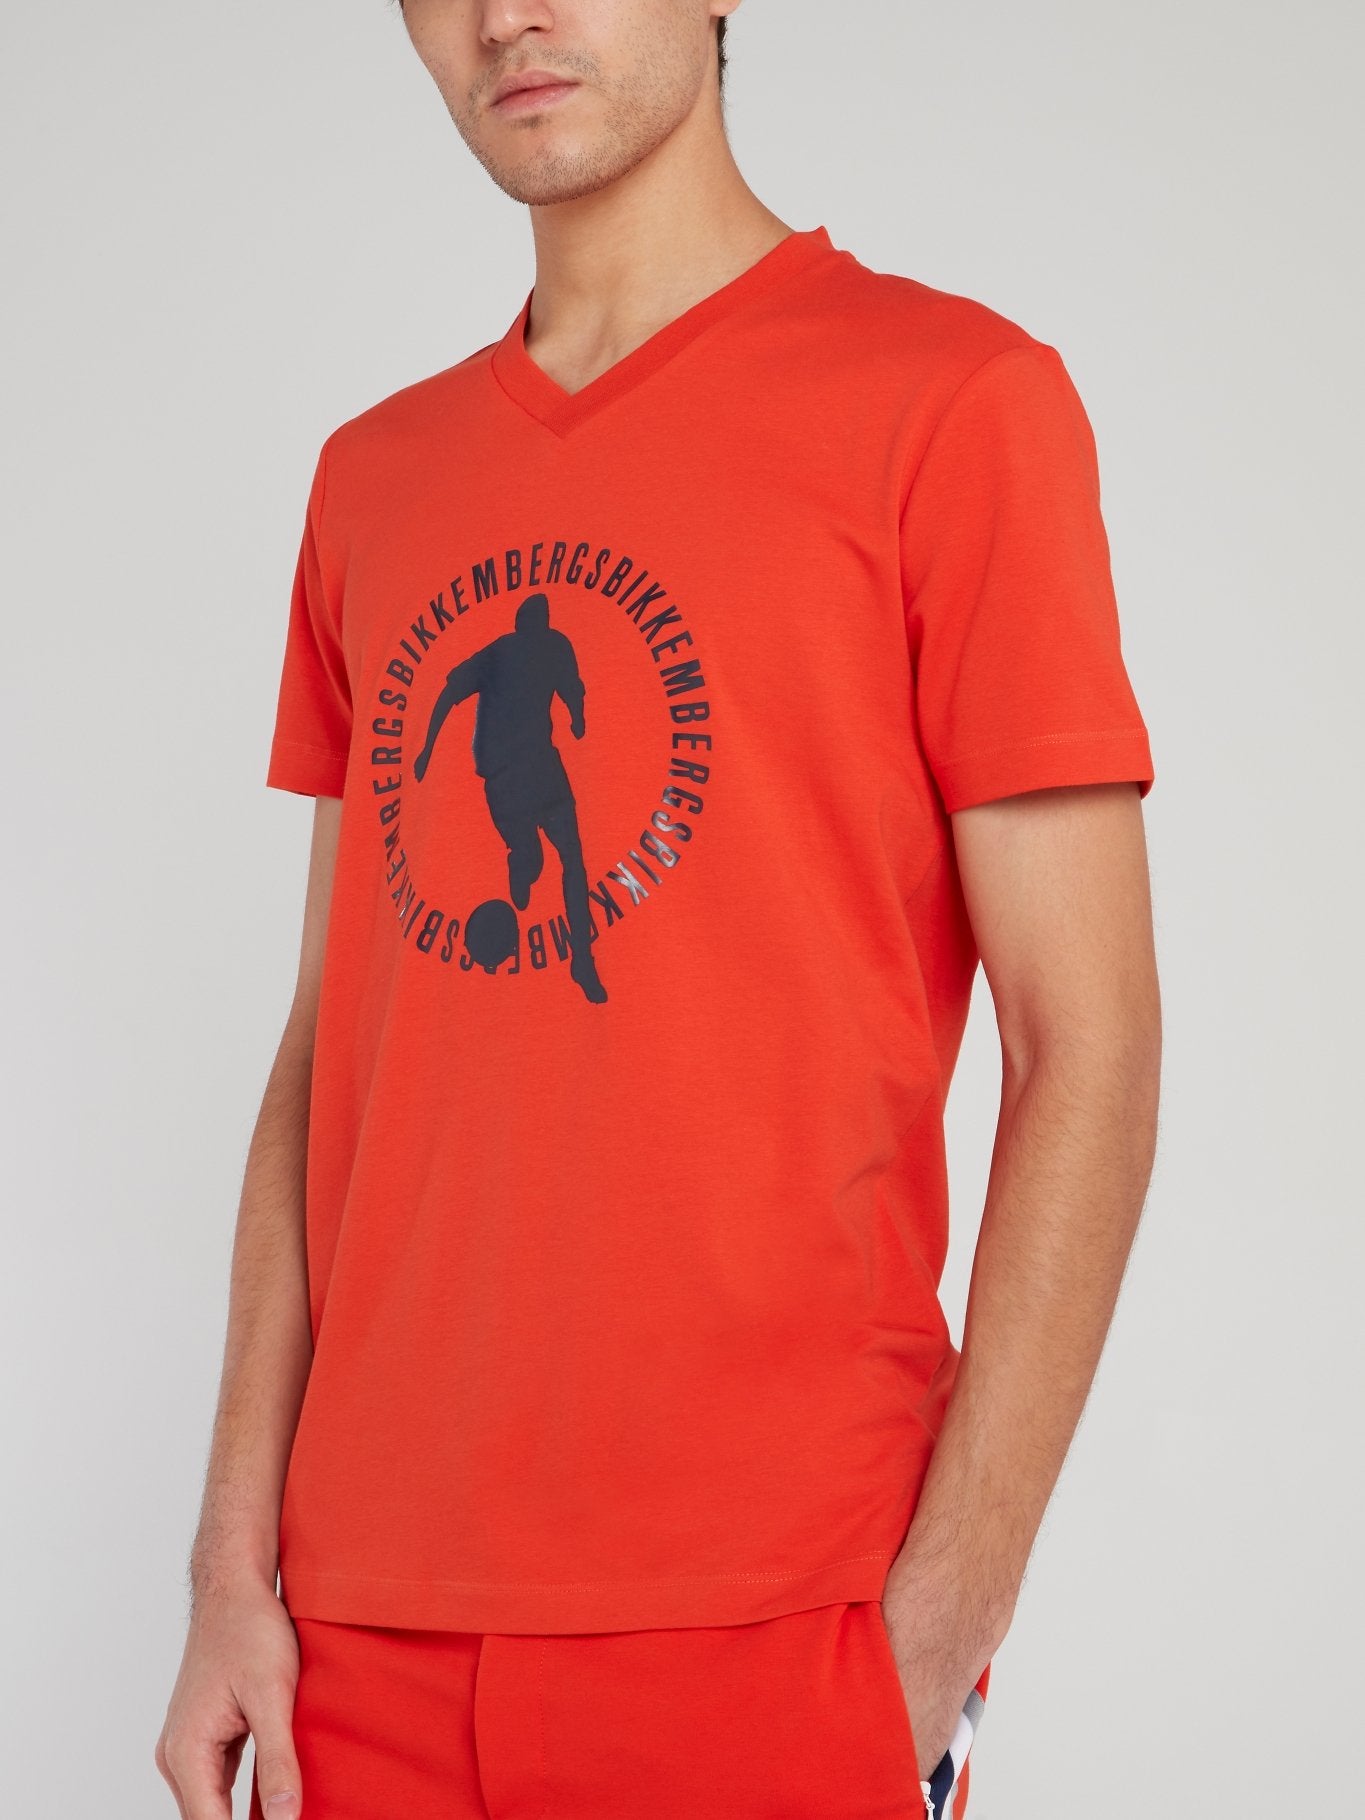 Orange Sport Print V-Neck T-Shirt